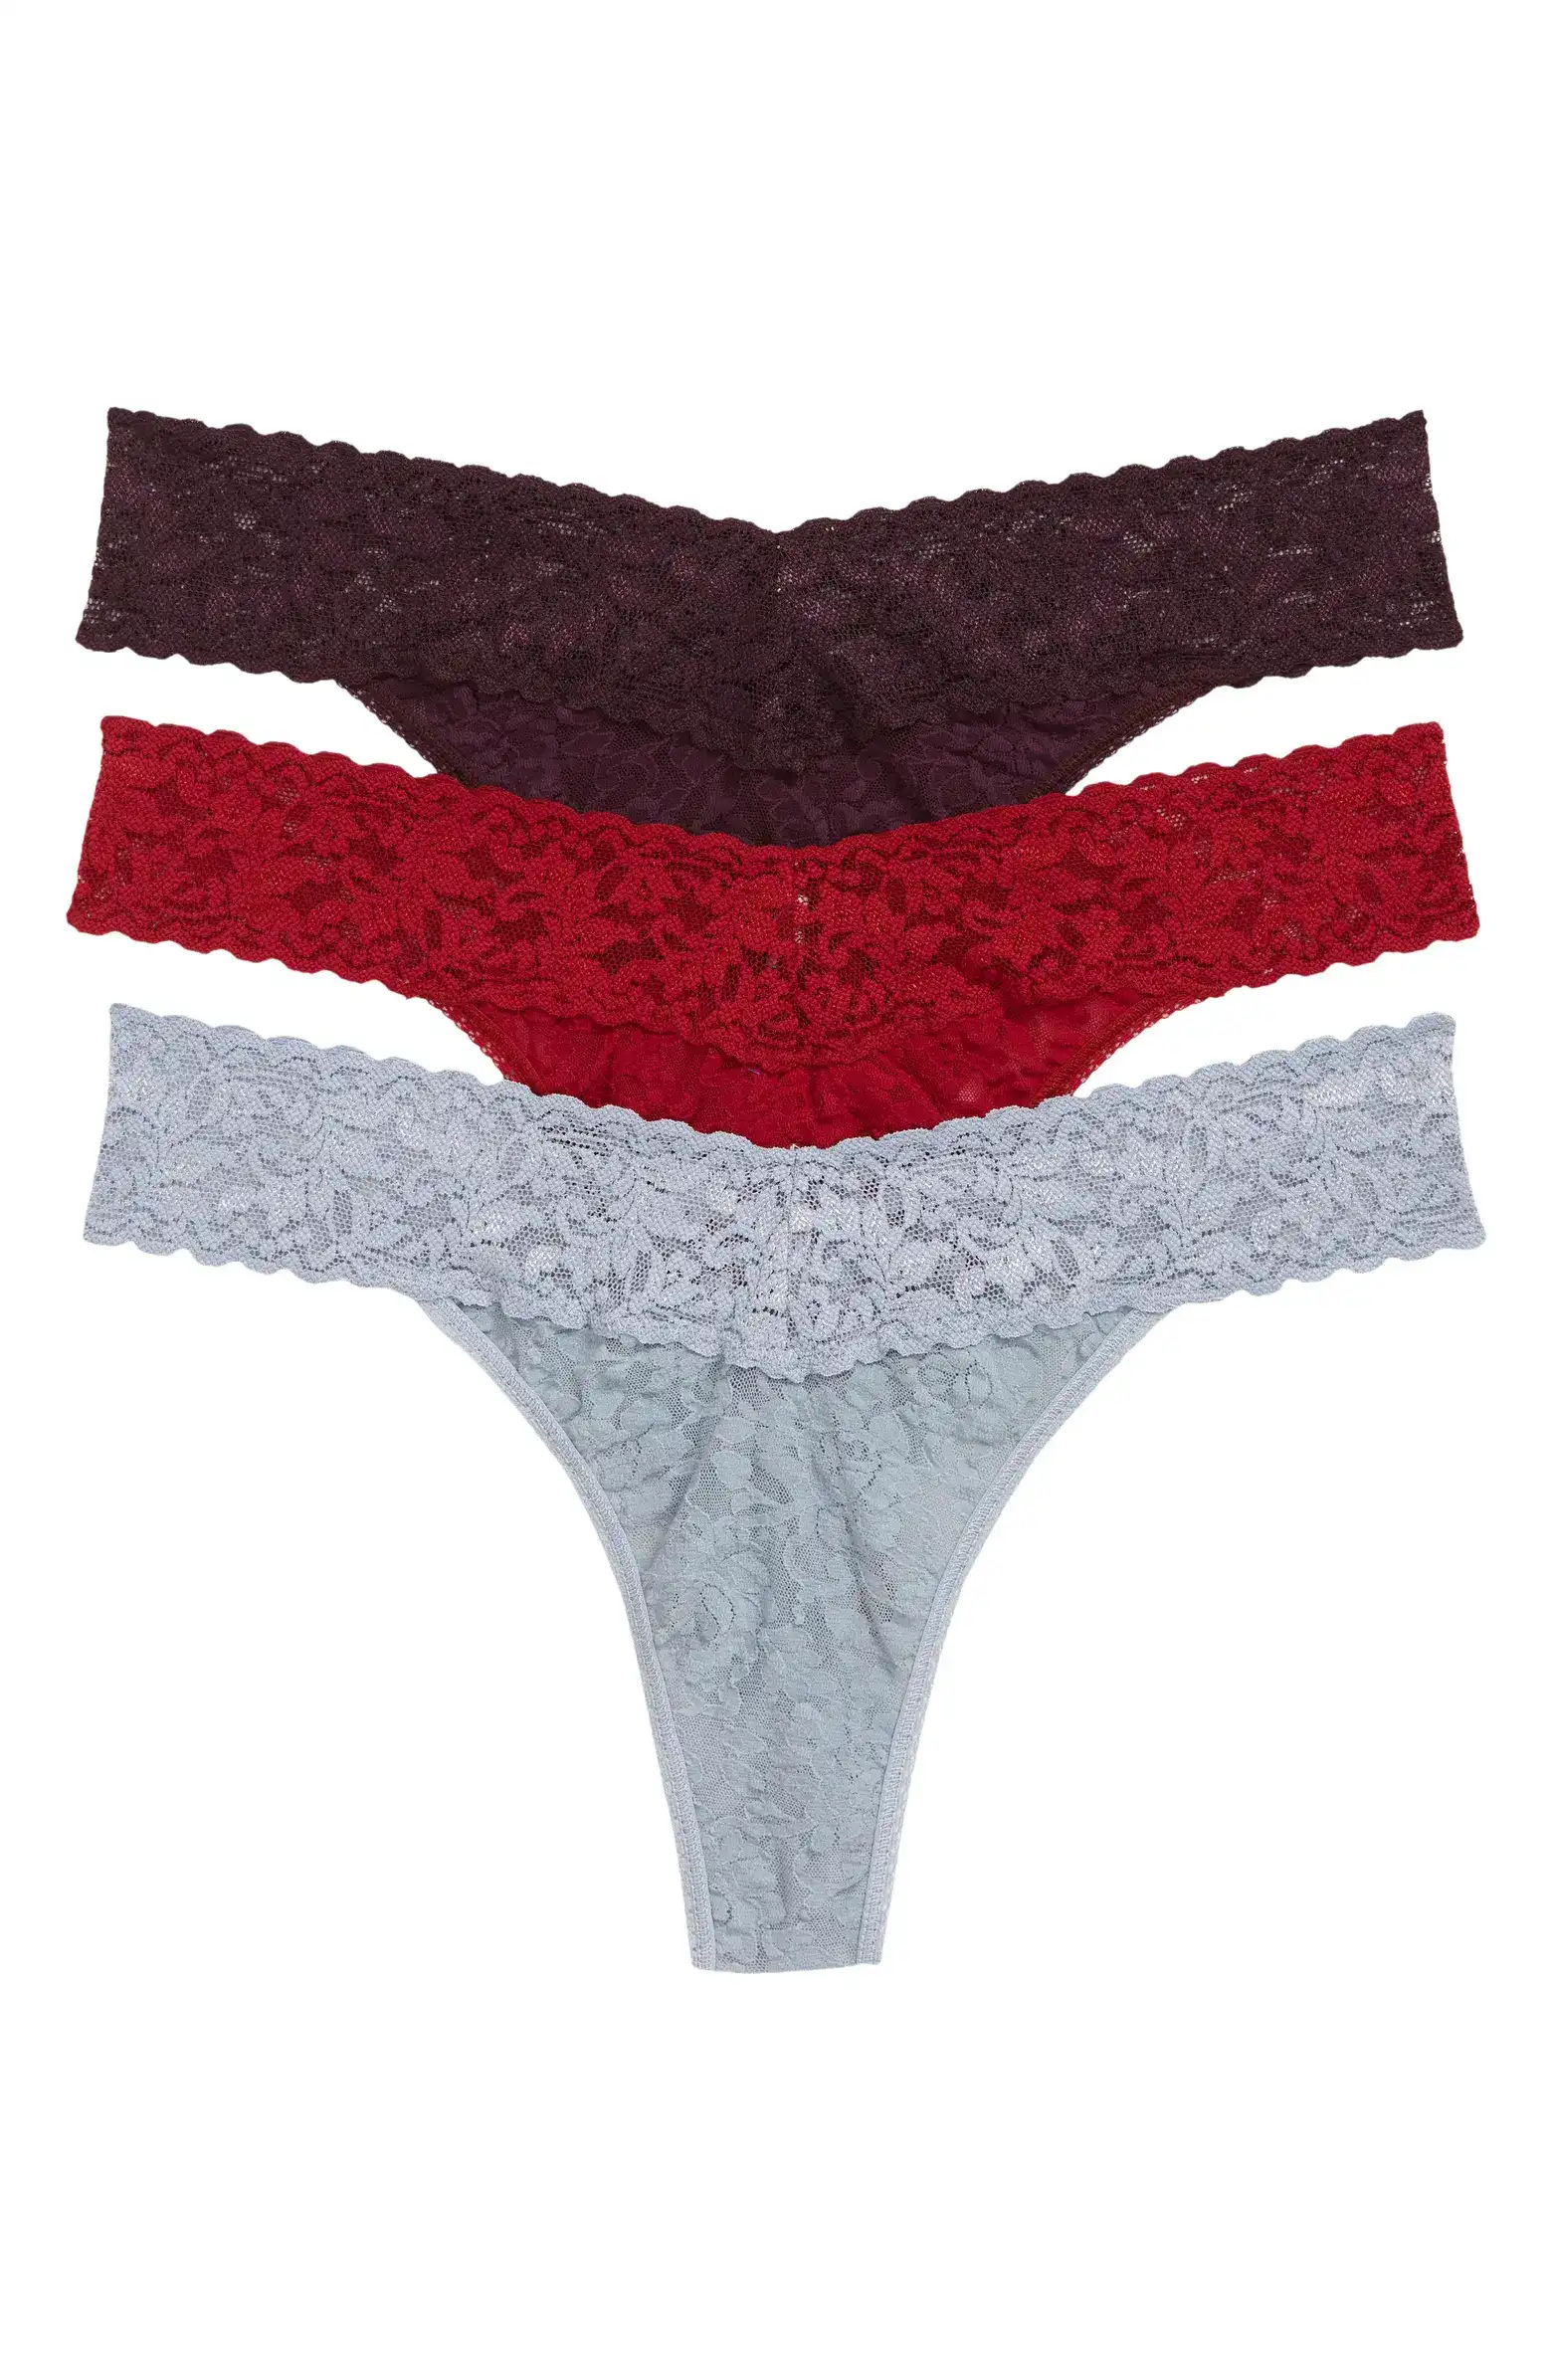 National Underwear Day: Best Underwear From Lululemon, Hanky Panky